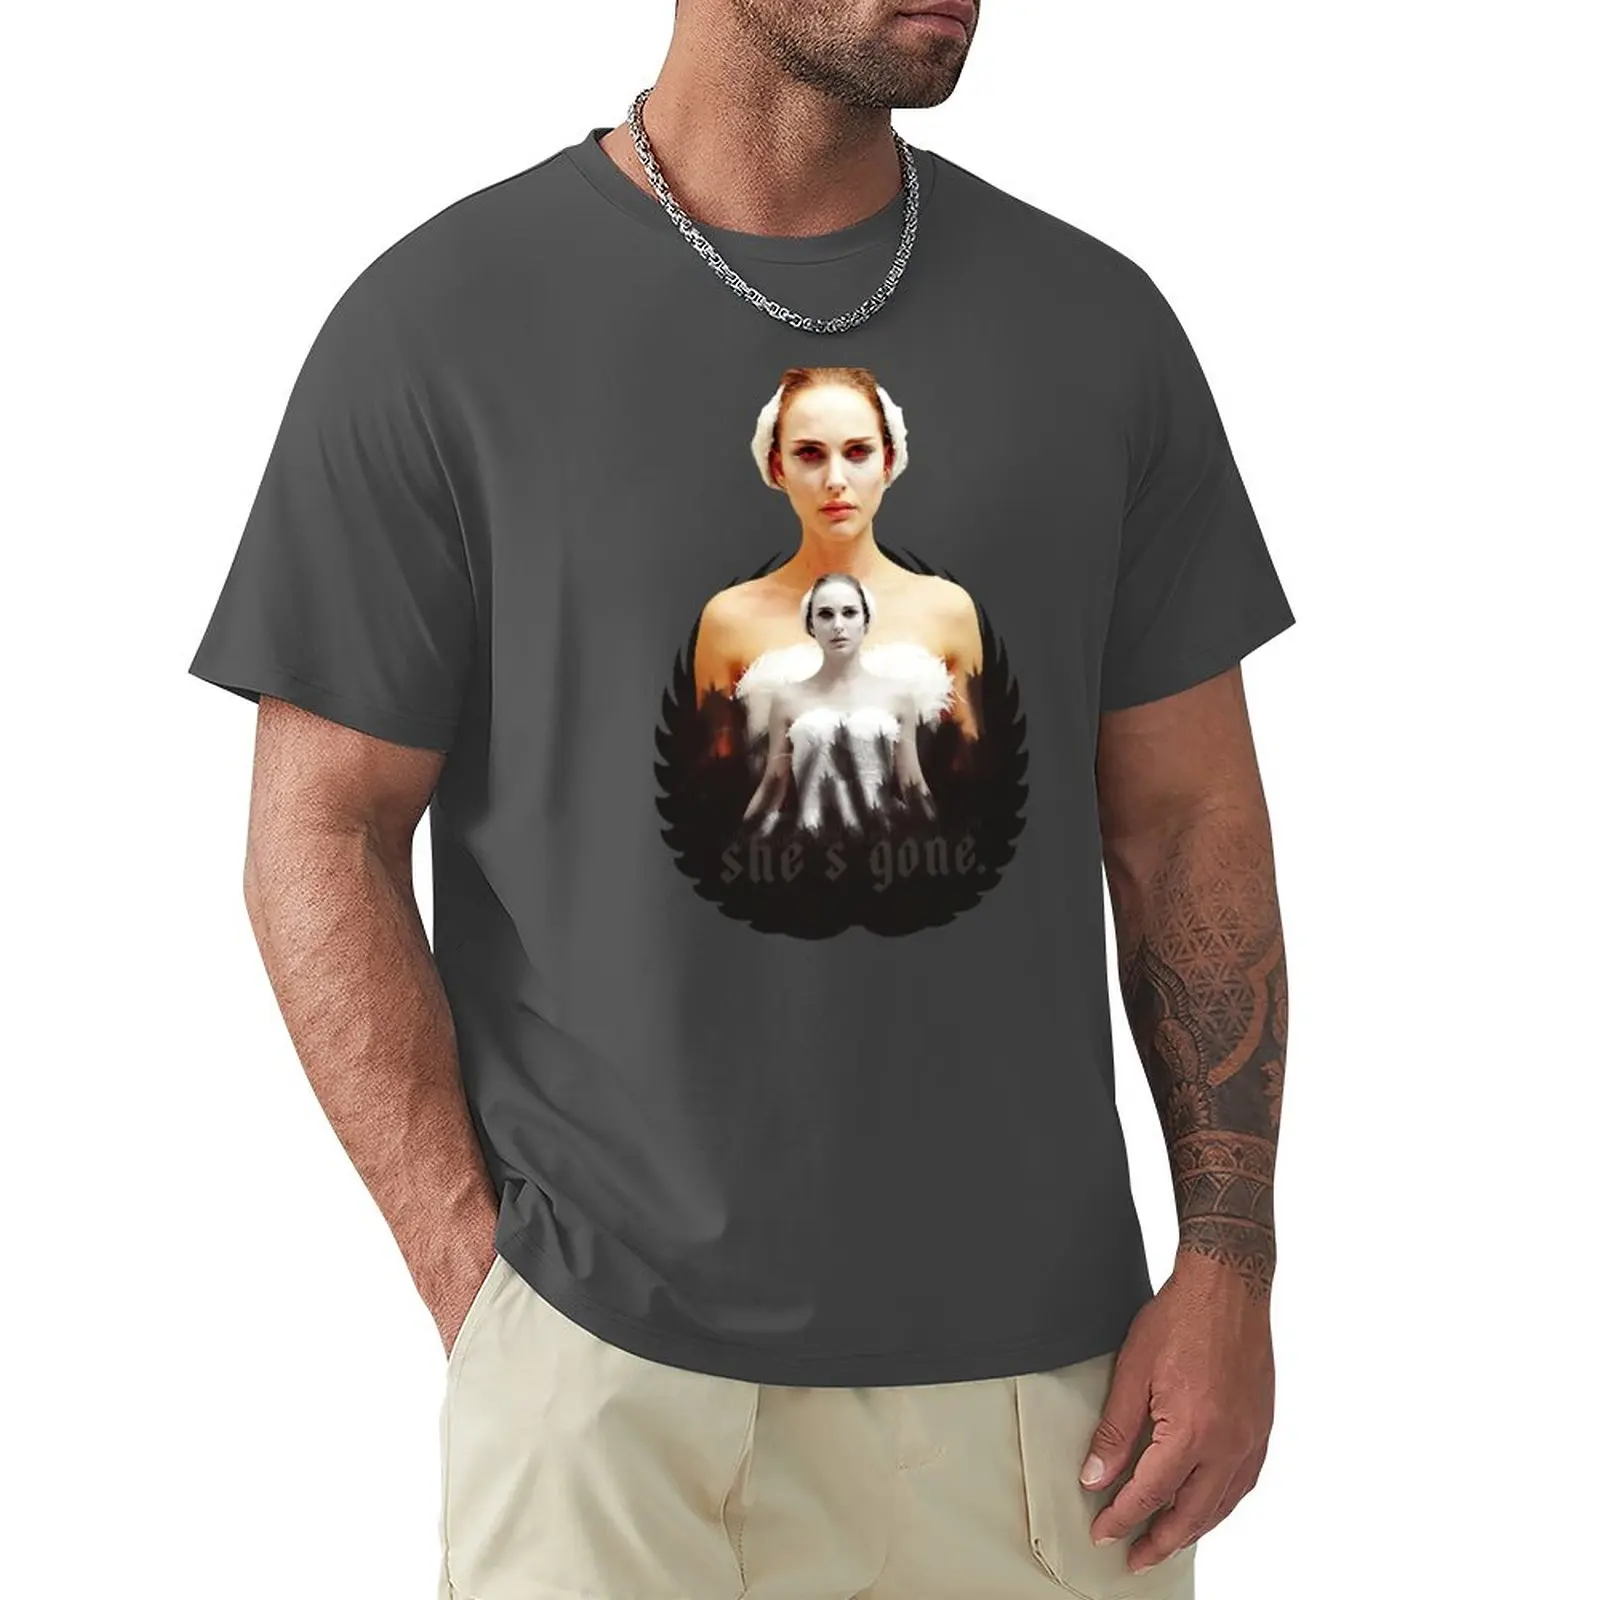 Футболка Black Swan sweet girl, футболка оверсайз, черная футболка, футболки с кошками, быстросохнущая футболка, мужские футболки в упаковке